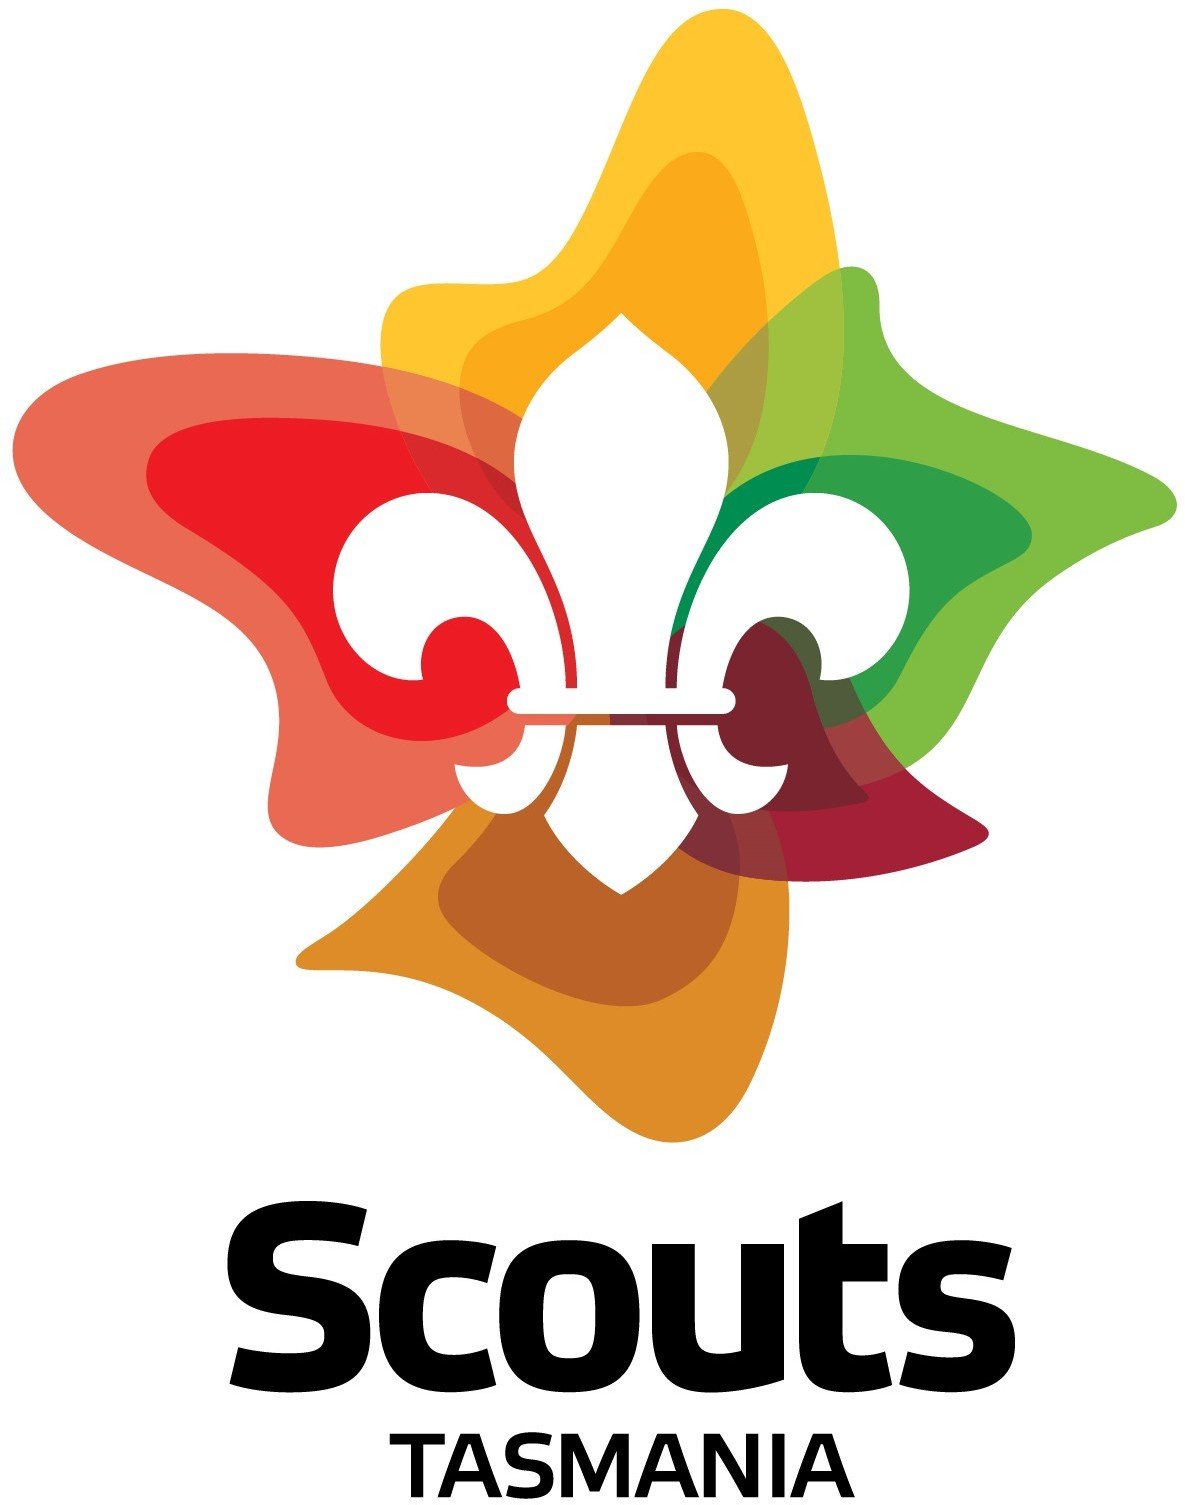 Scouts - jota.jpg